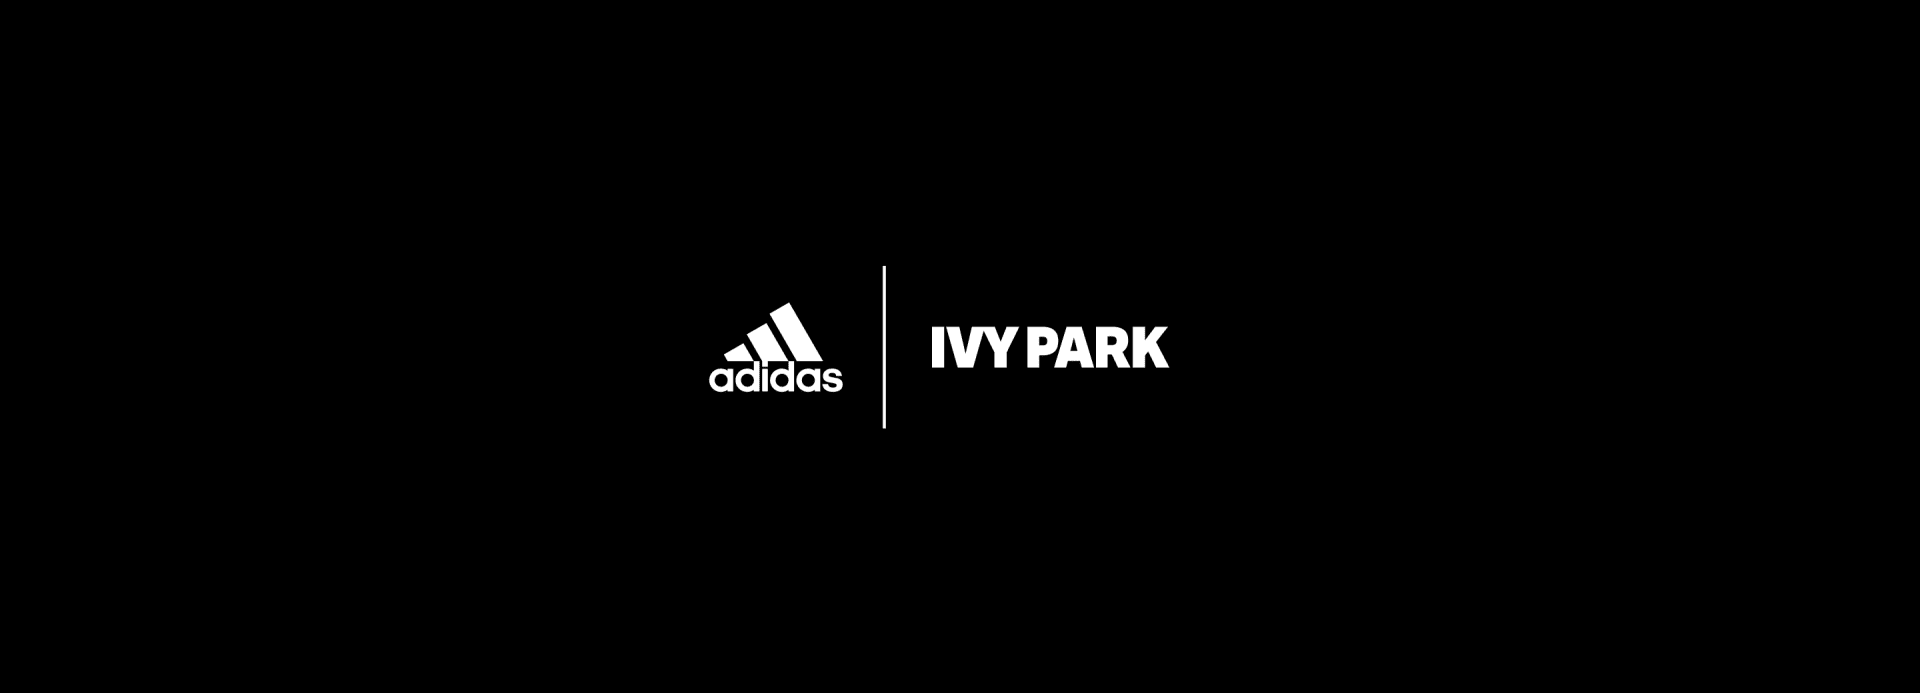 adidas x IVY PARK estreiam primeira coleção swimwear + Lançamento